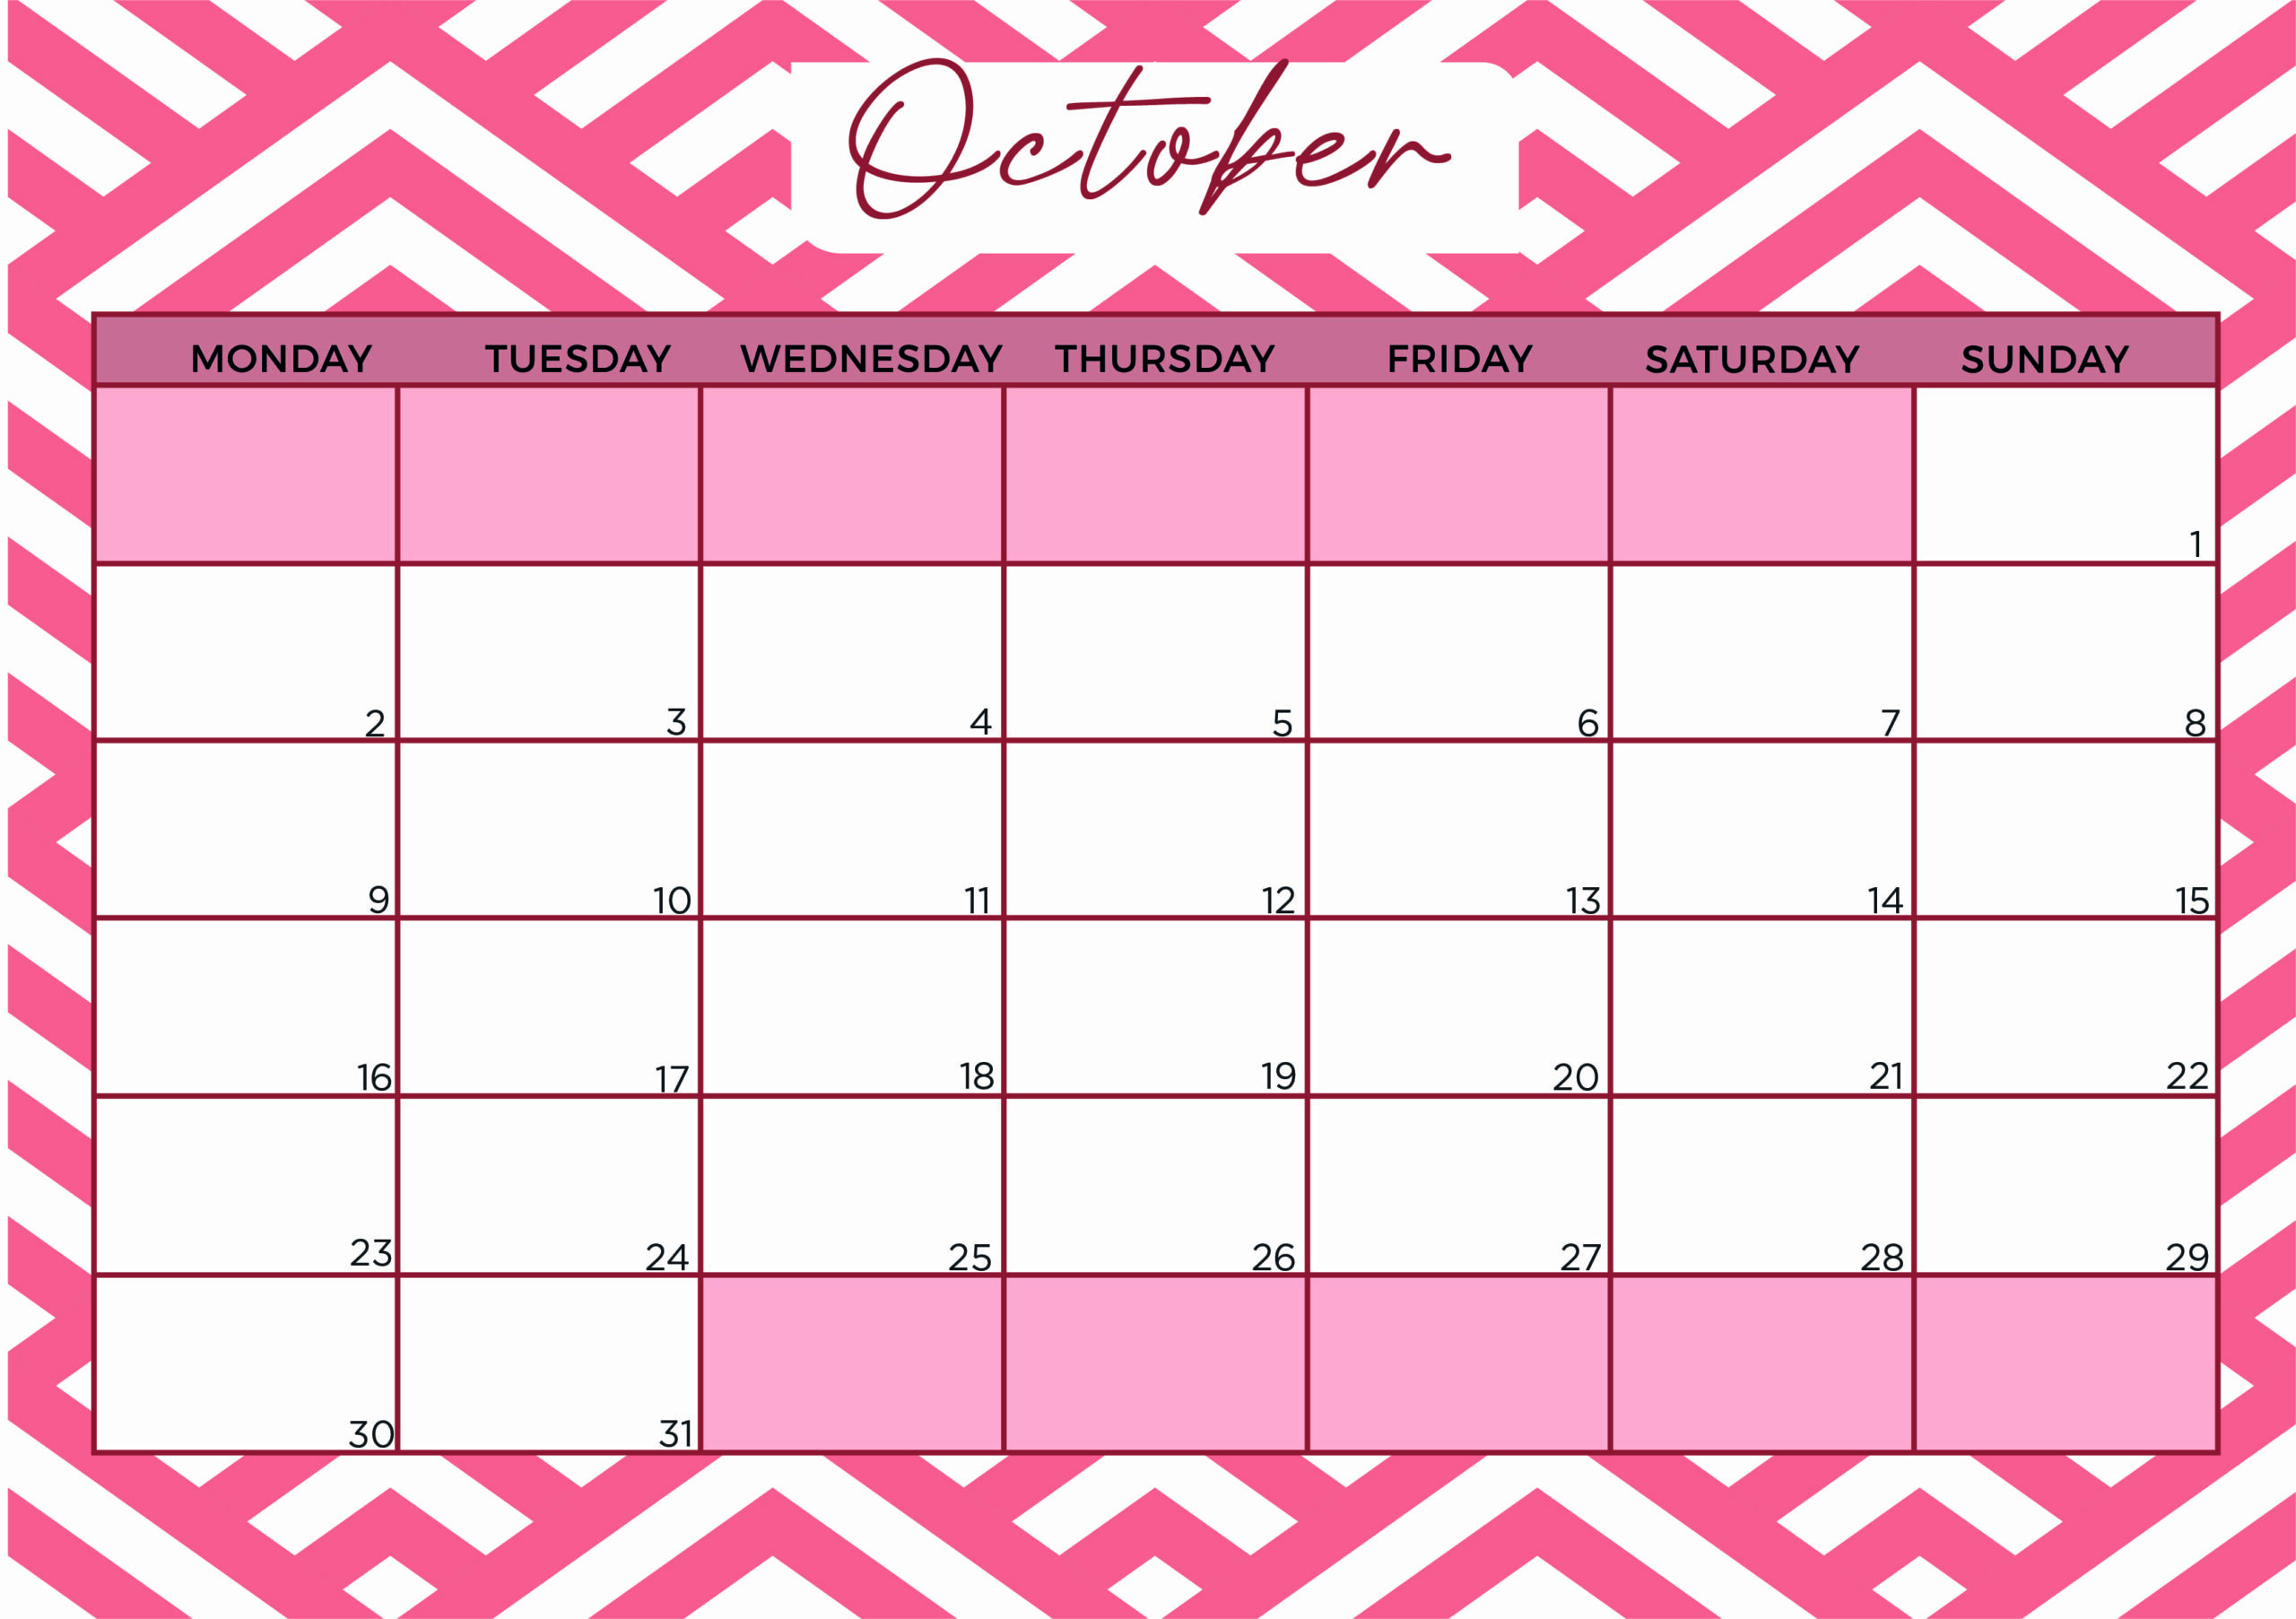 October 2023 Calendar Printable